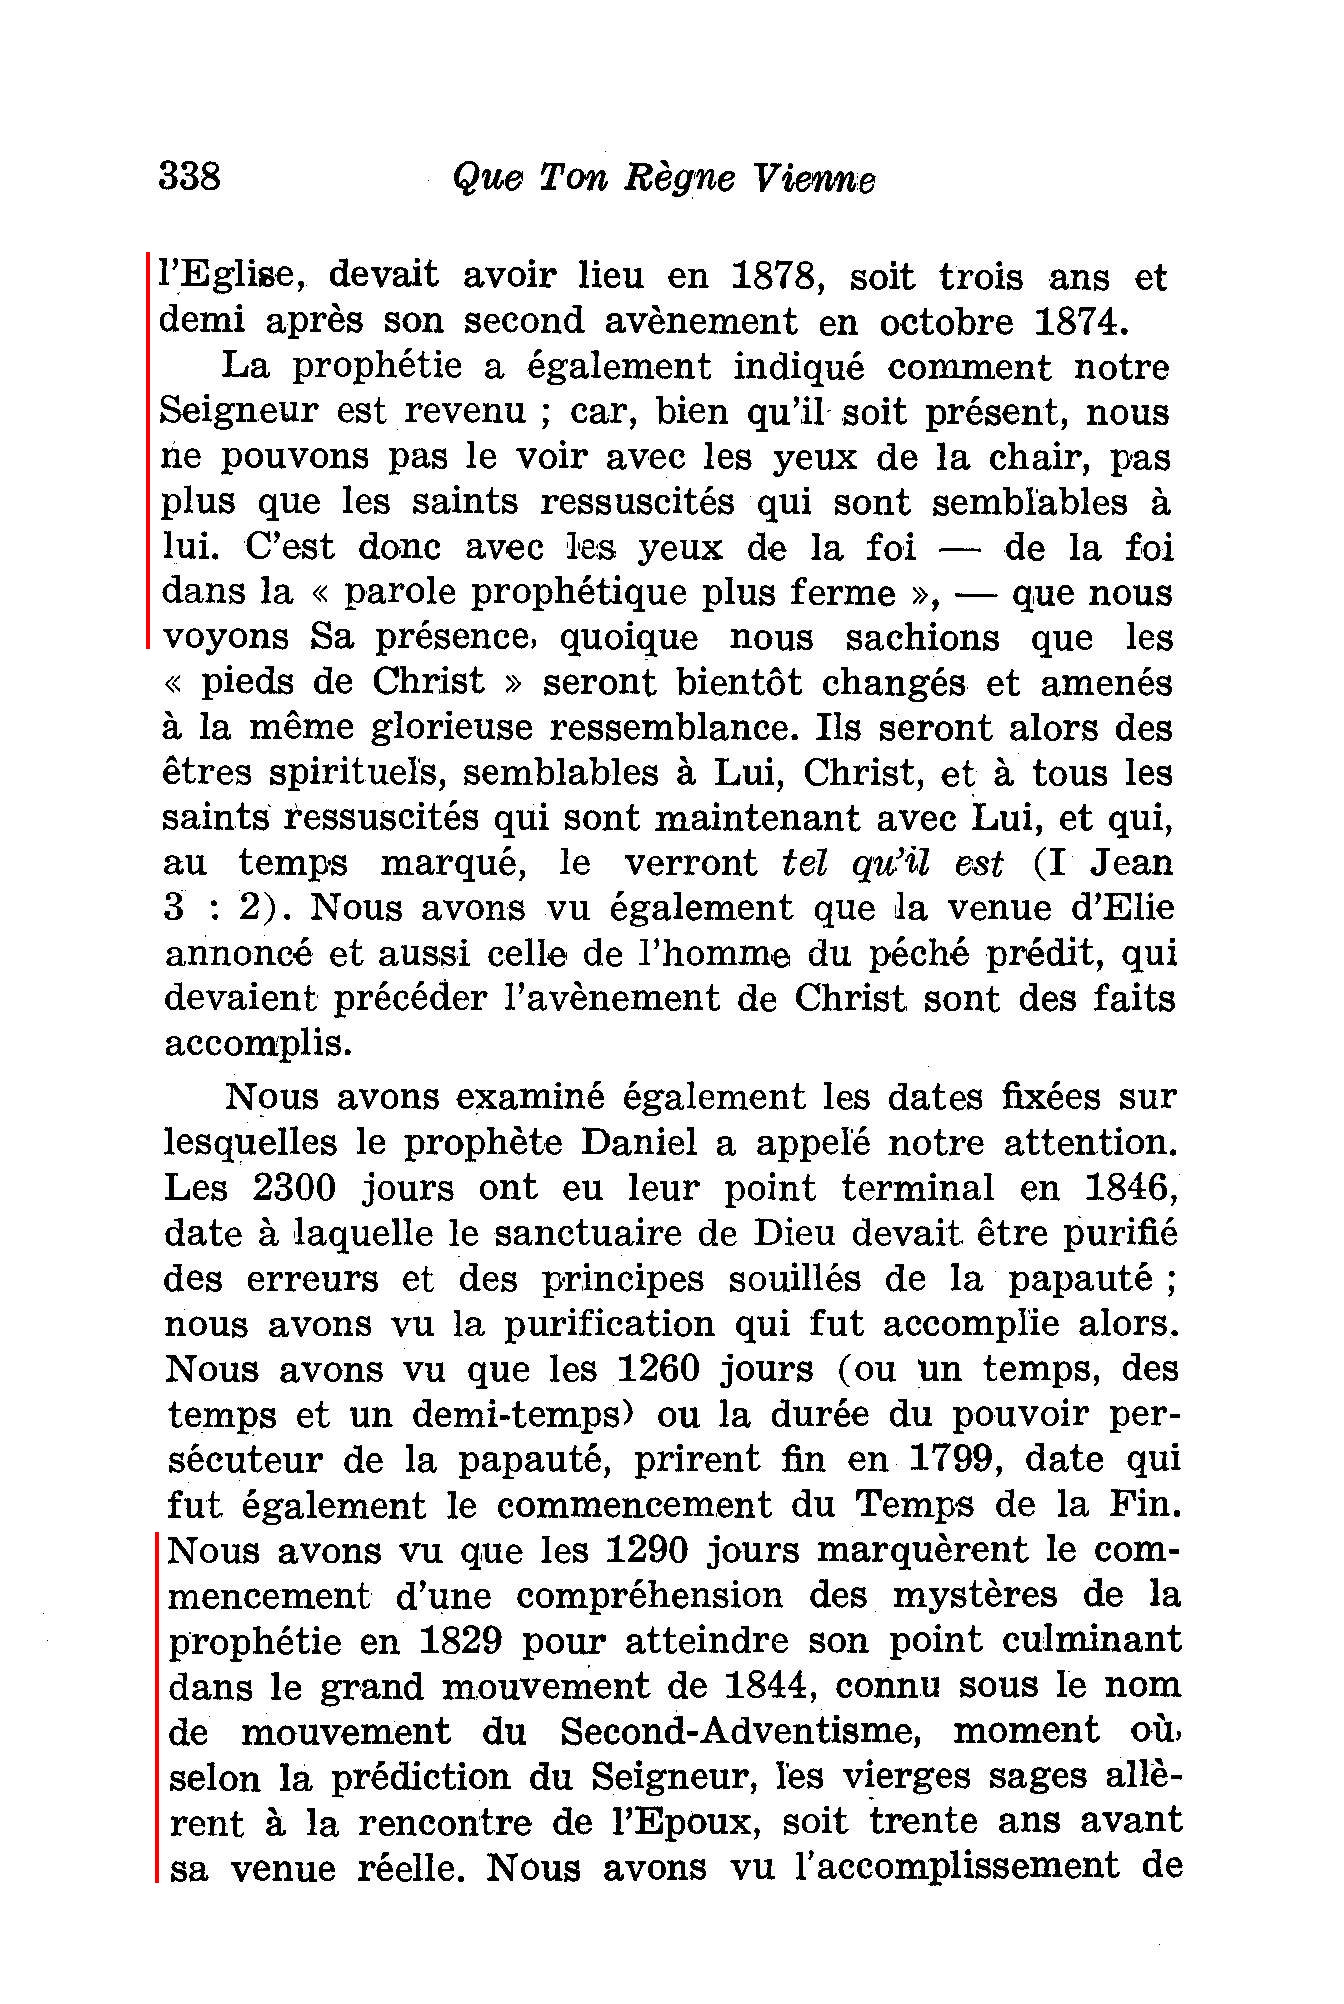 Les fausses prophéties par la Société watch tower - Page 2 Ibo1